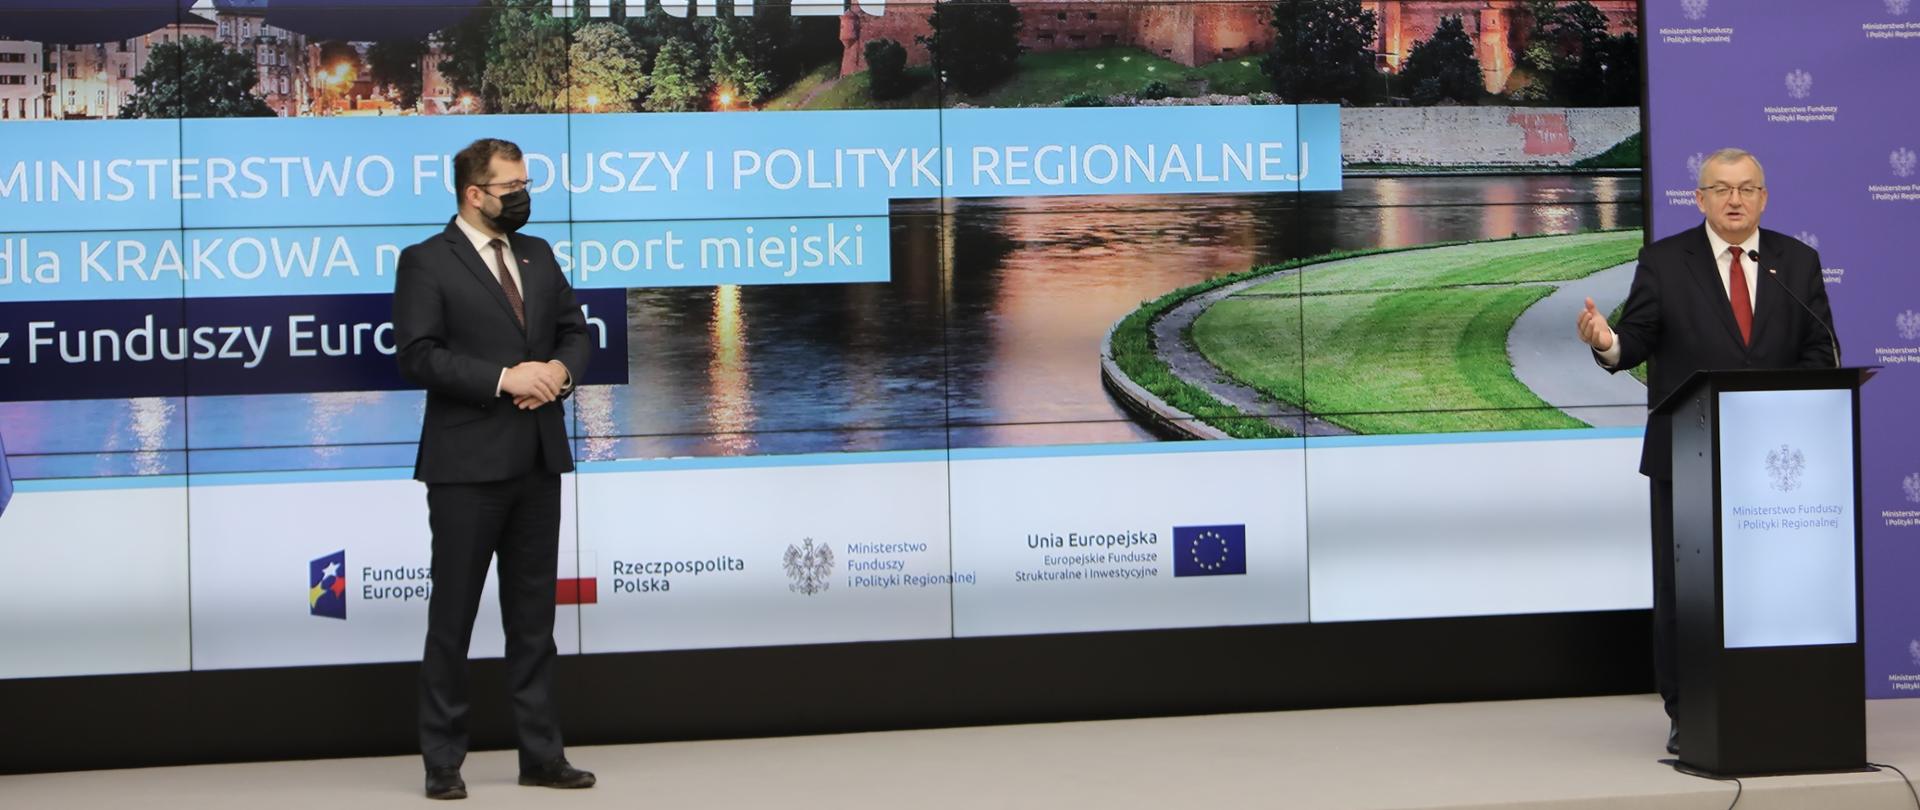 Na scenie w mównicy minister Andrzej Adamczyk. Obok minister Grzegorz Puda. Za nimi na ekranie napis - 33 mln zł.